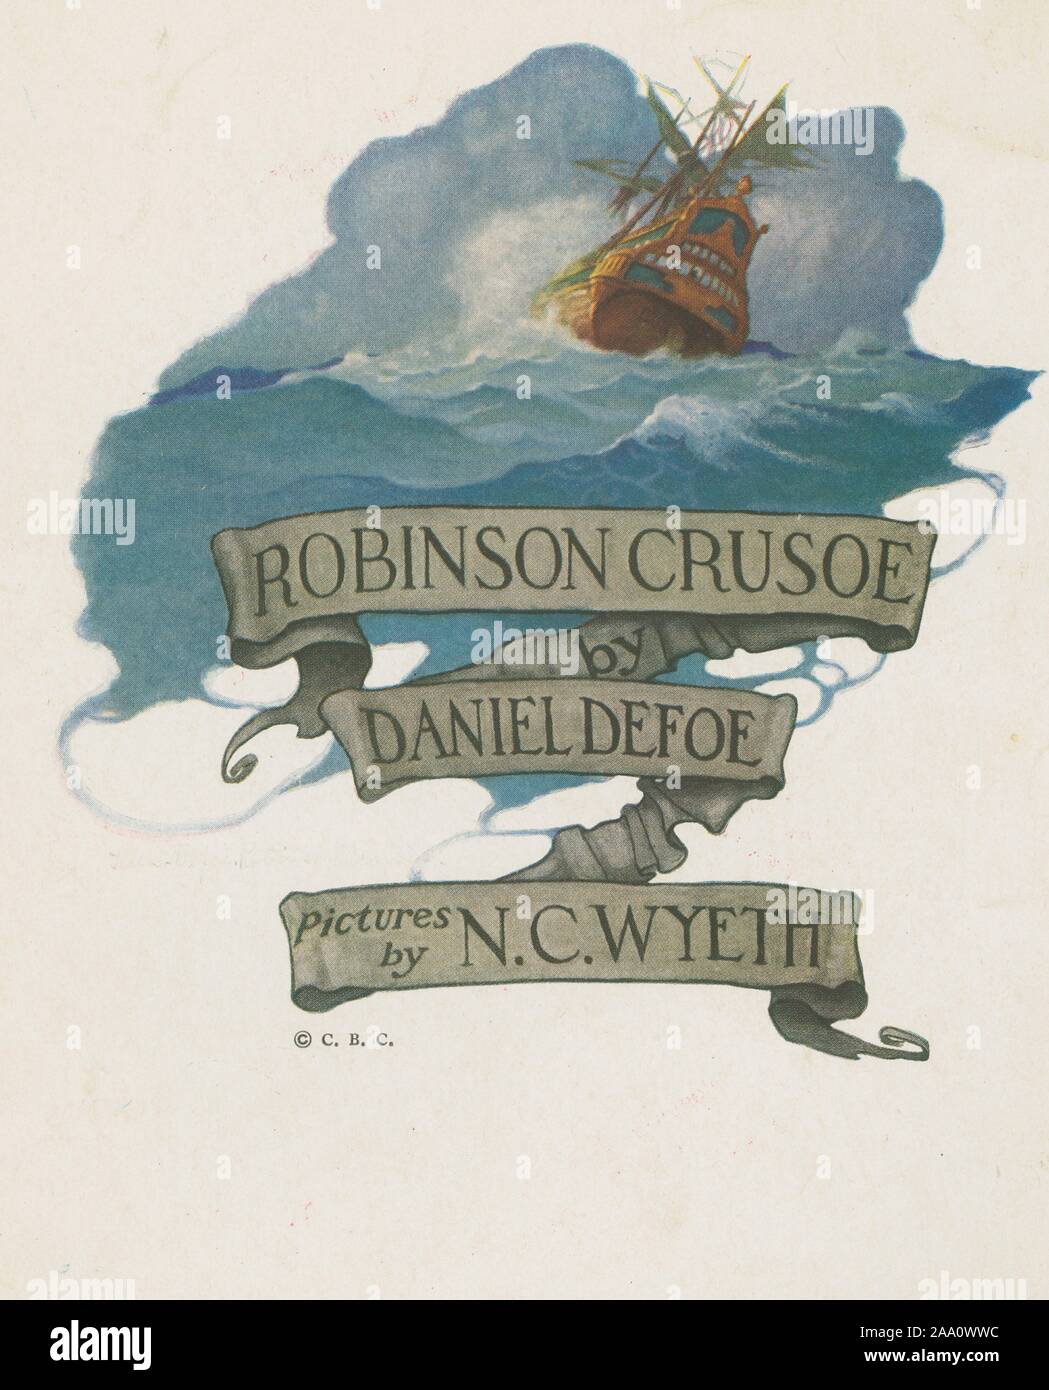 Ilustración de la portada del libro "Robinson Crusoe" de Daniel Defoe, autor con Crusoe de nave en un mar tempestuoso, ilustrado por Newell Convers Wyeth, 1920. Desde la Biblioteca Pública de Nueva York. () Foto de stock